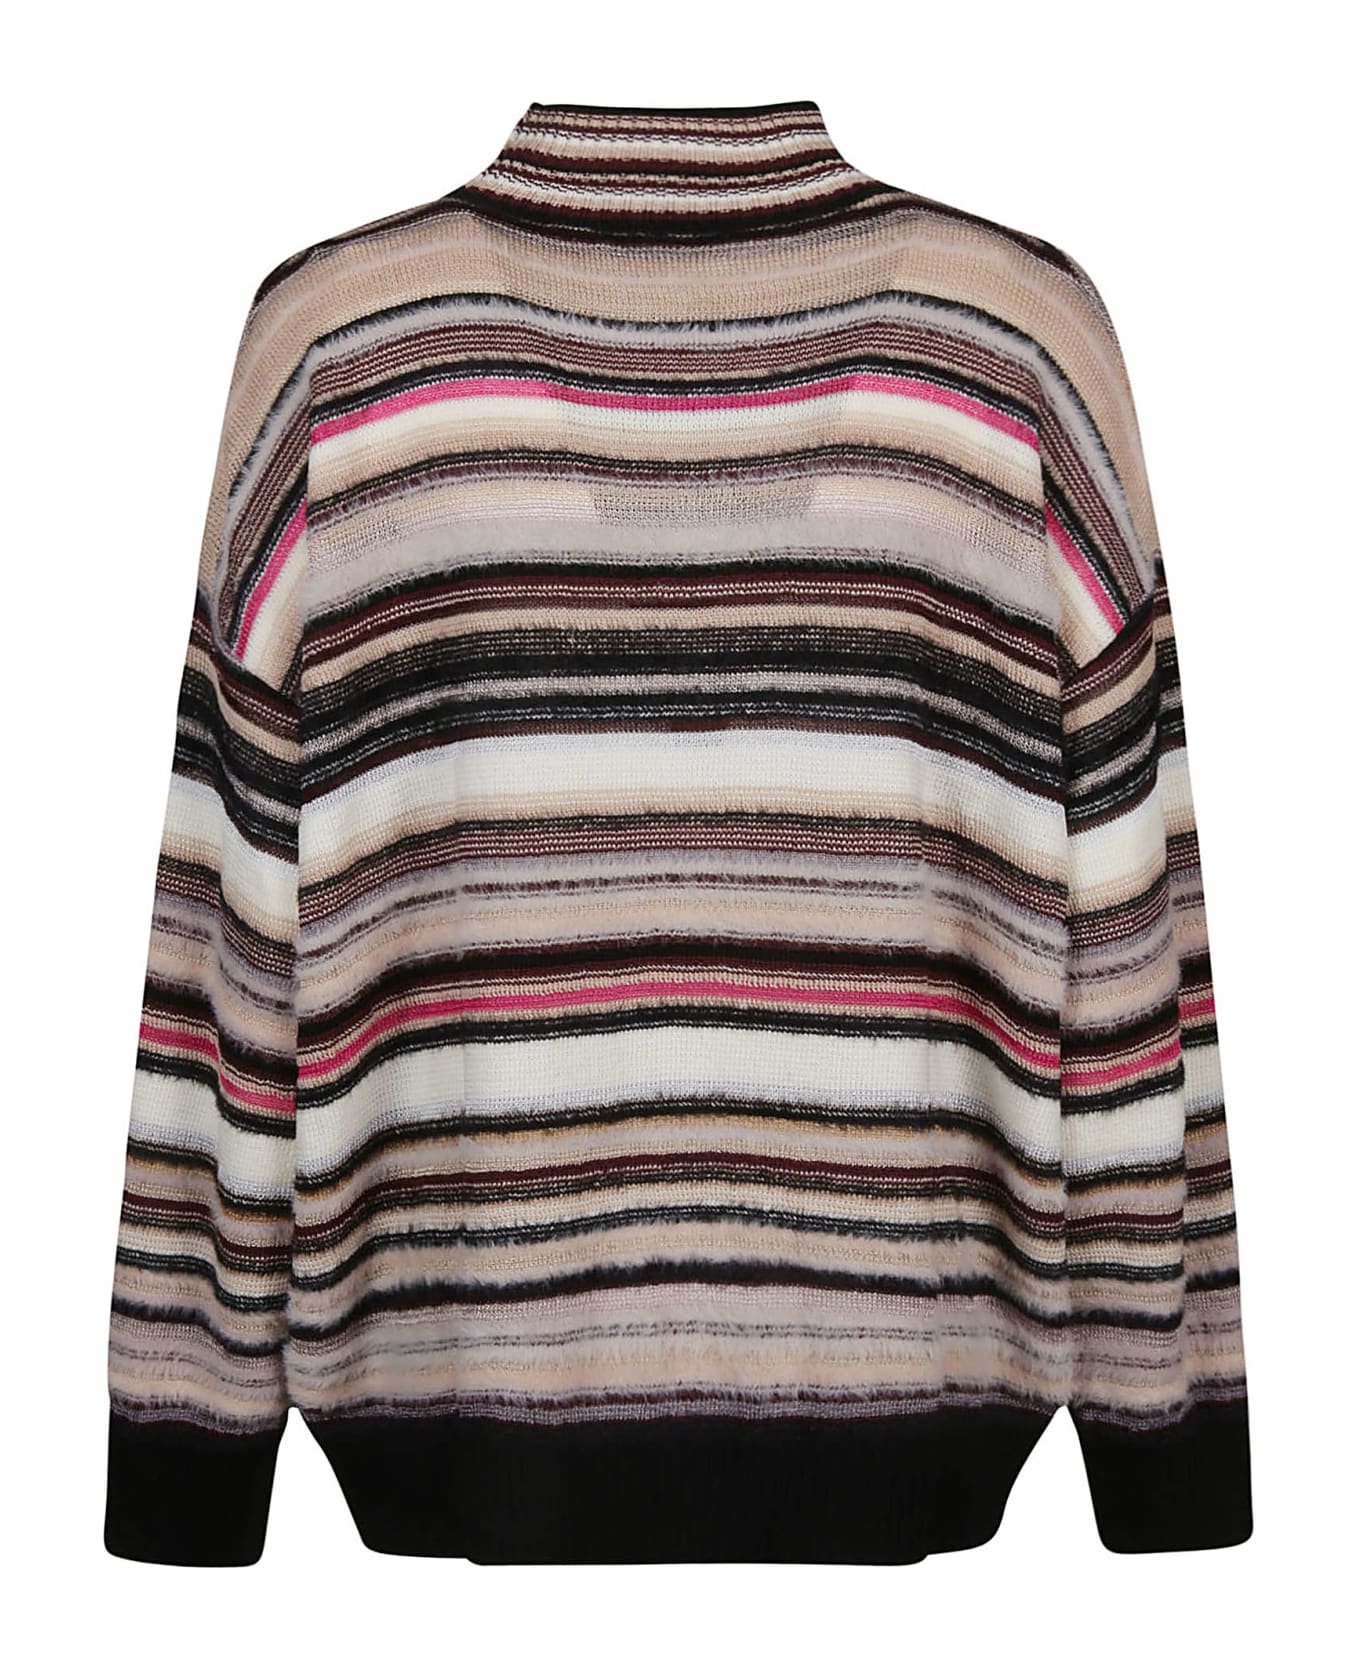 Missoni Turtle Neck Sweater - W Multicolor Beige/fucsia/nero